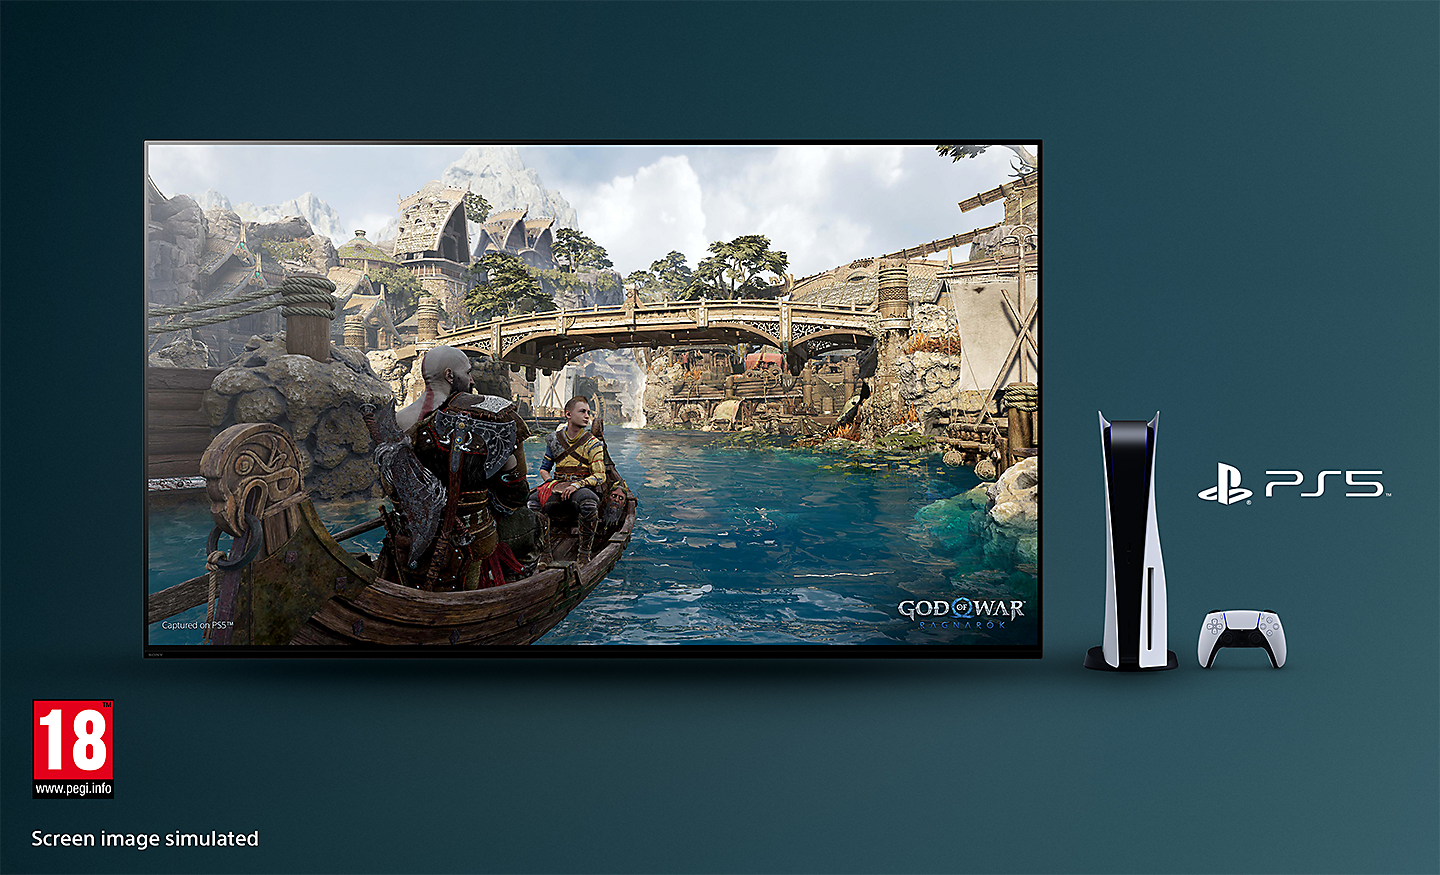 BRAVIA-tv met een screenshot van God of War: Ragnarök met een boot die over een rivier vaart, en een brug op de achtergrond. Rechts van de tv staat een PS5™-console met controller en het PS5™-logo en rechtsonder het PEGI 18-logo